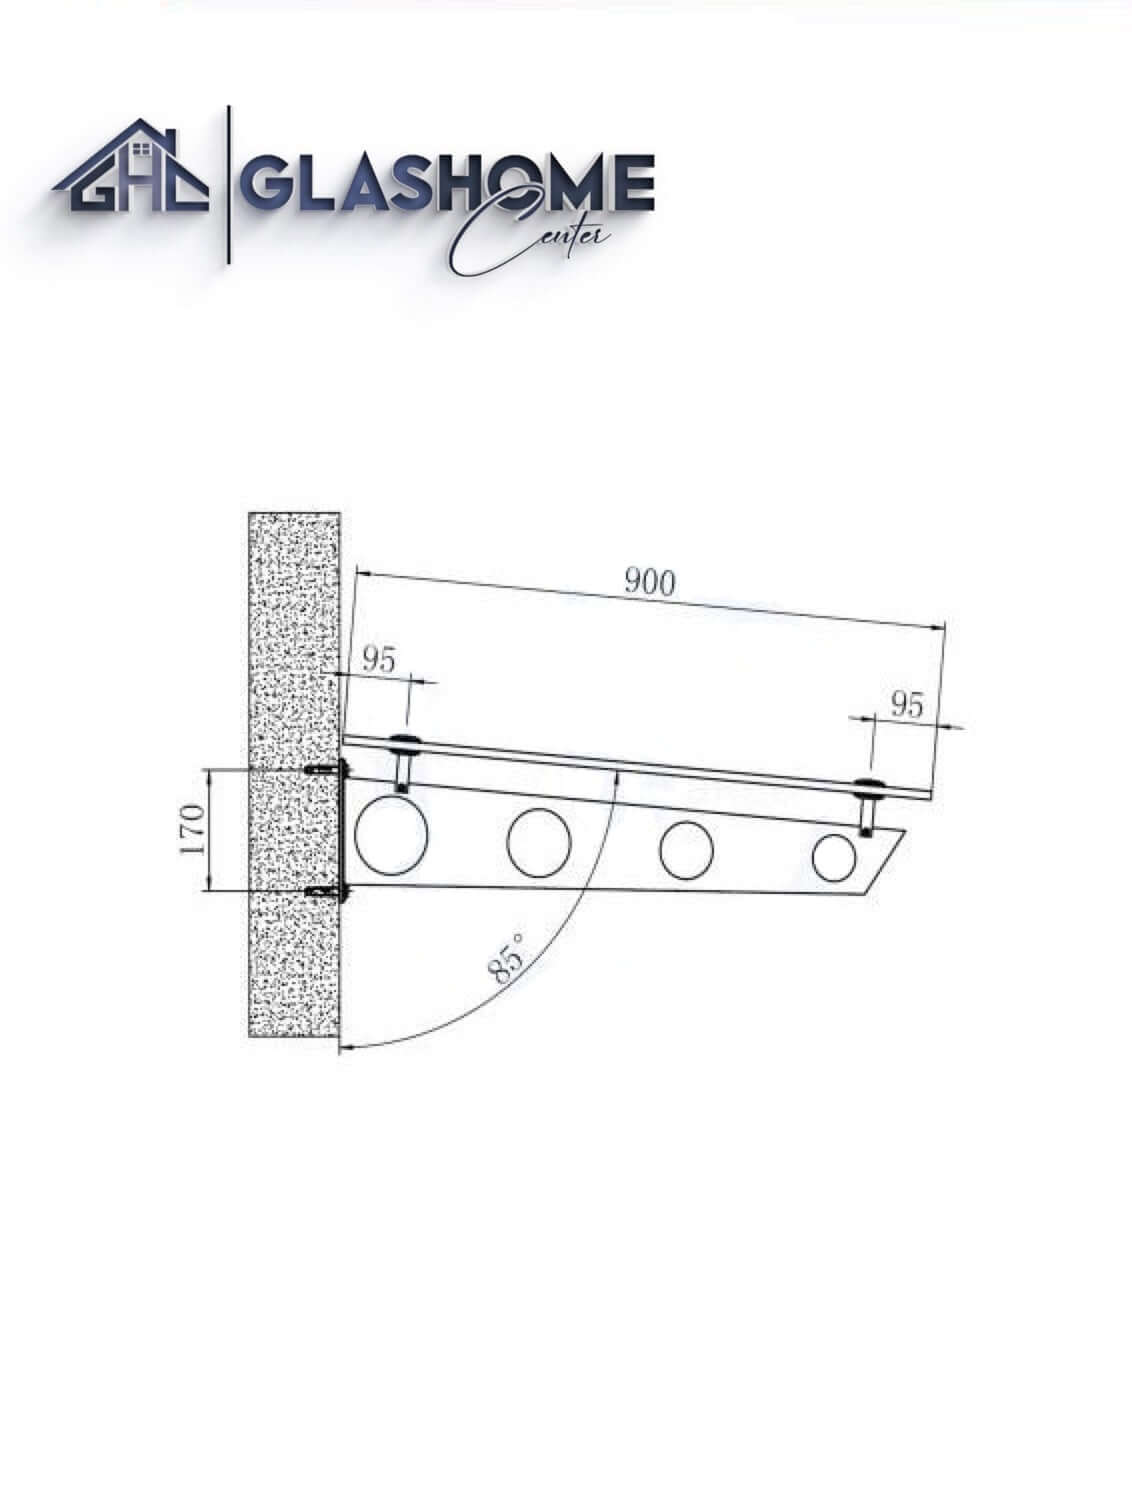 GlasHomeCenter - Glasvordach - Milchglas - 150x90cm - 13,1mm VSG - incl. 2 varianti Edelstahlhalterungen nere "Stoccolma"